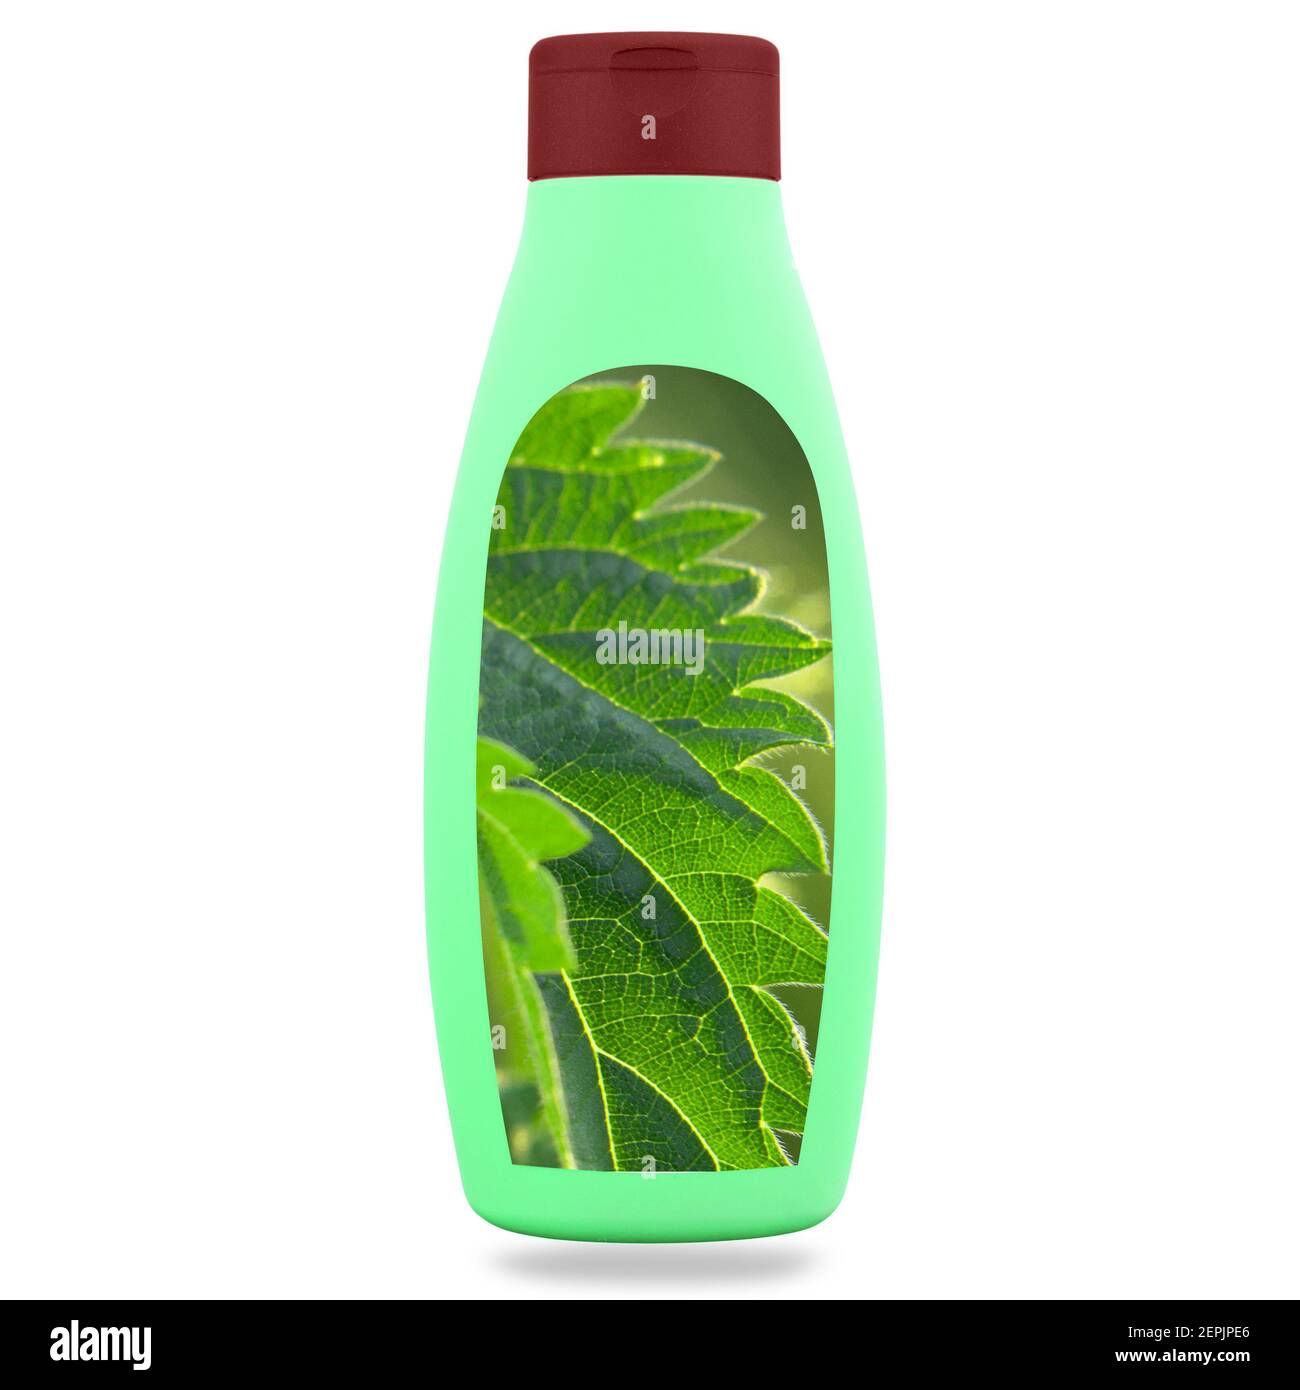 Centro benessere naturale, cosmetici a base di erbe. Shampoo o sapone di  ortica in una bottiglia. Erbe curative per la salute e la bellezza, la cura  della pelle e la cura dei